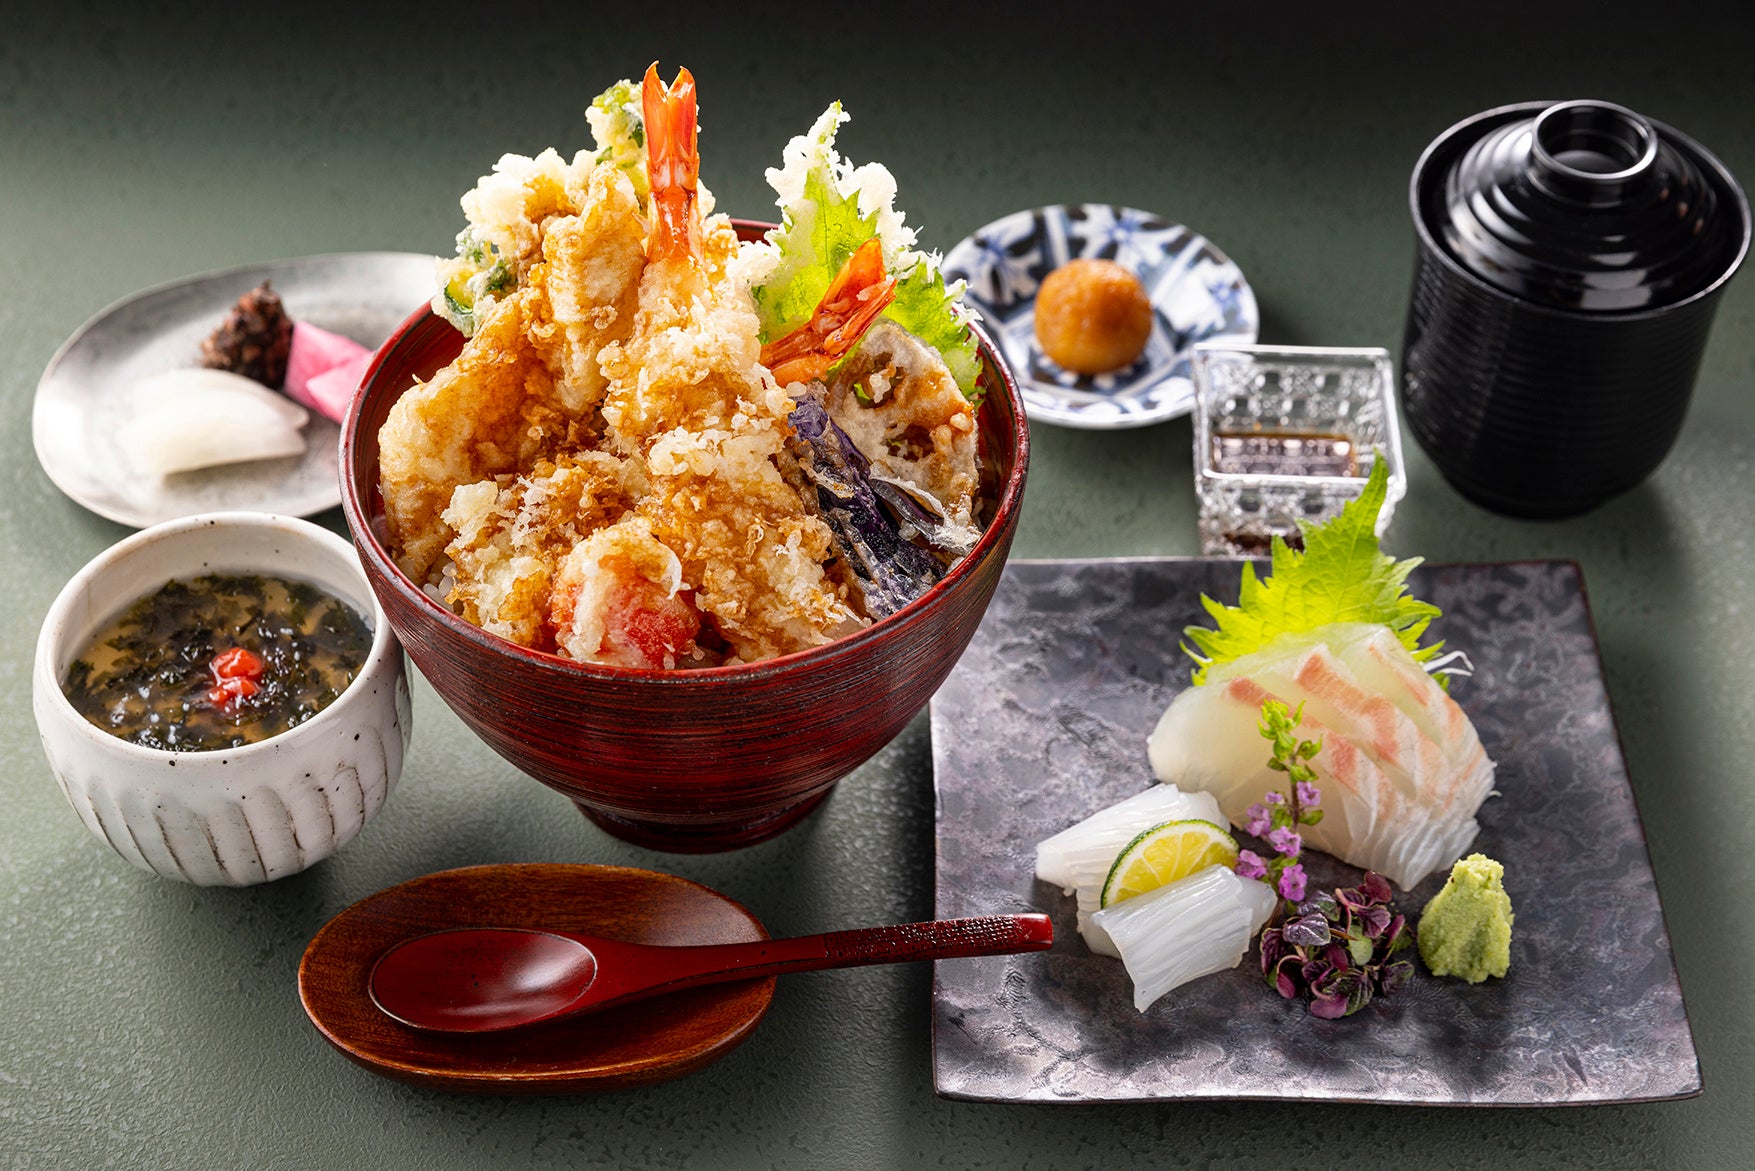 日本料理「風花」 ランチ「天ぷら御膳」